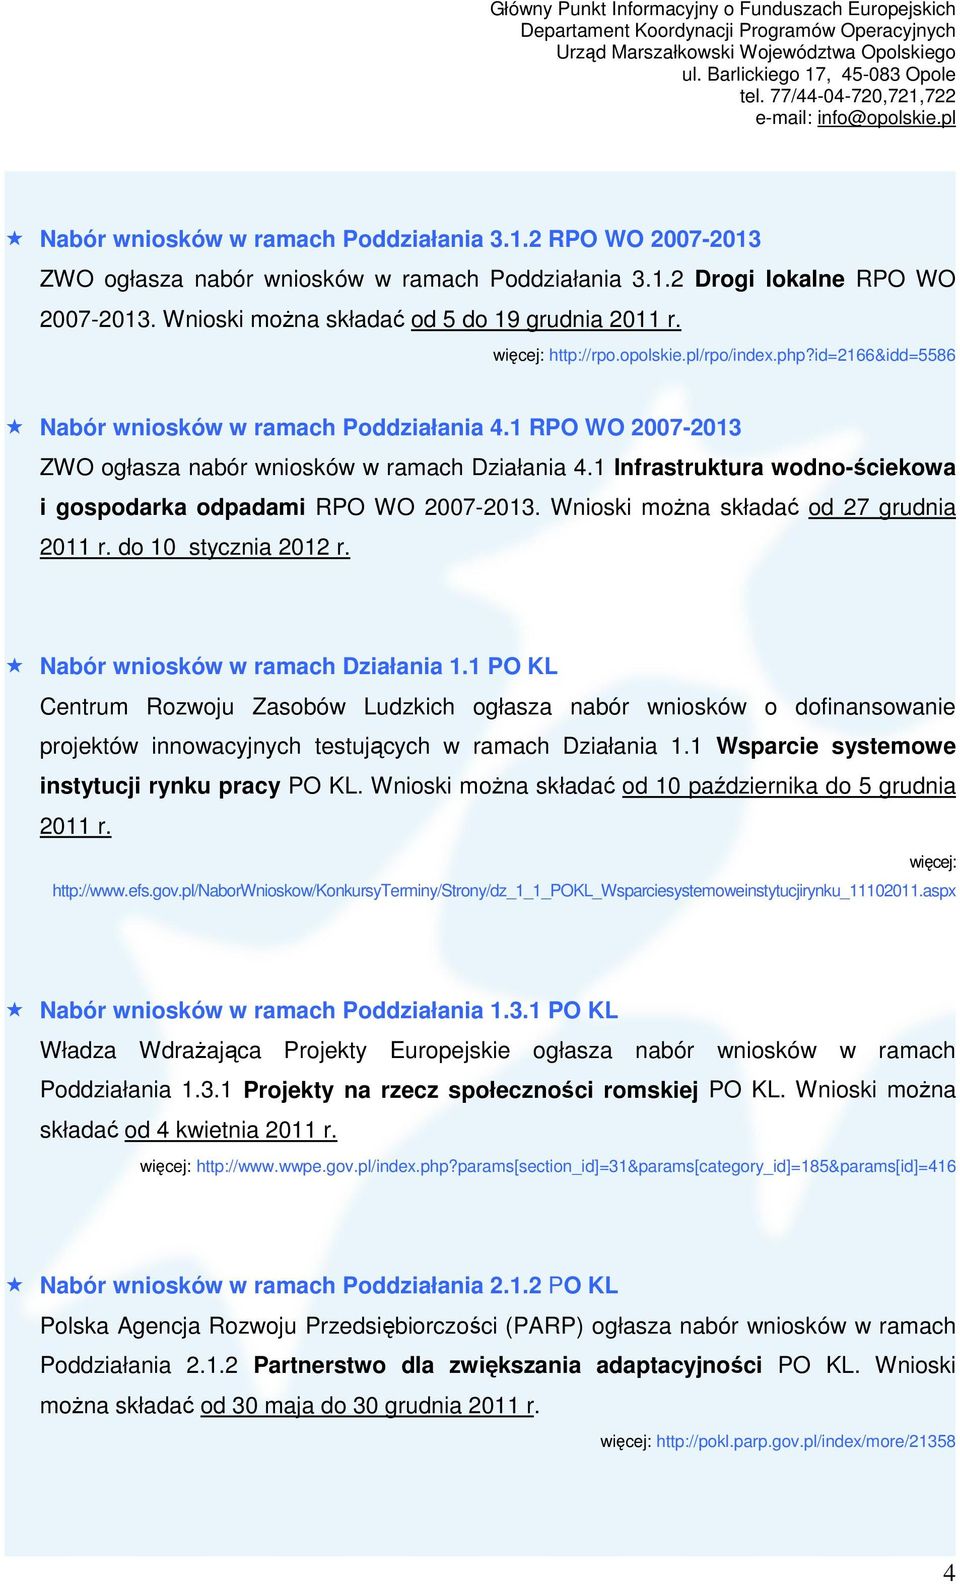 1 Infrastruktura wodno-ściekowa i gospodarka odpadami RPO WO 2007-2013. Wnioski moŝna składać od 27 grudnia 2011 r. do 10 stycznia 2012 r. Nabór wniosków w ramach Działania 1.